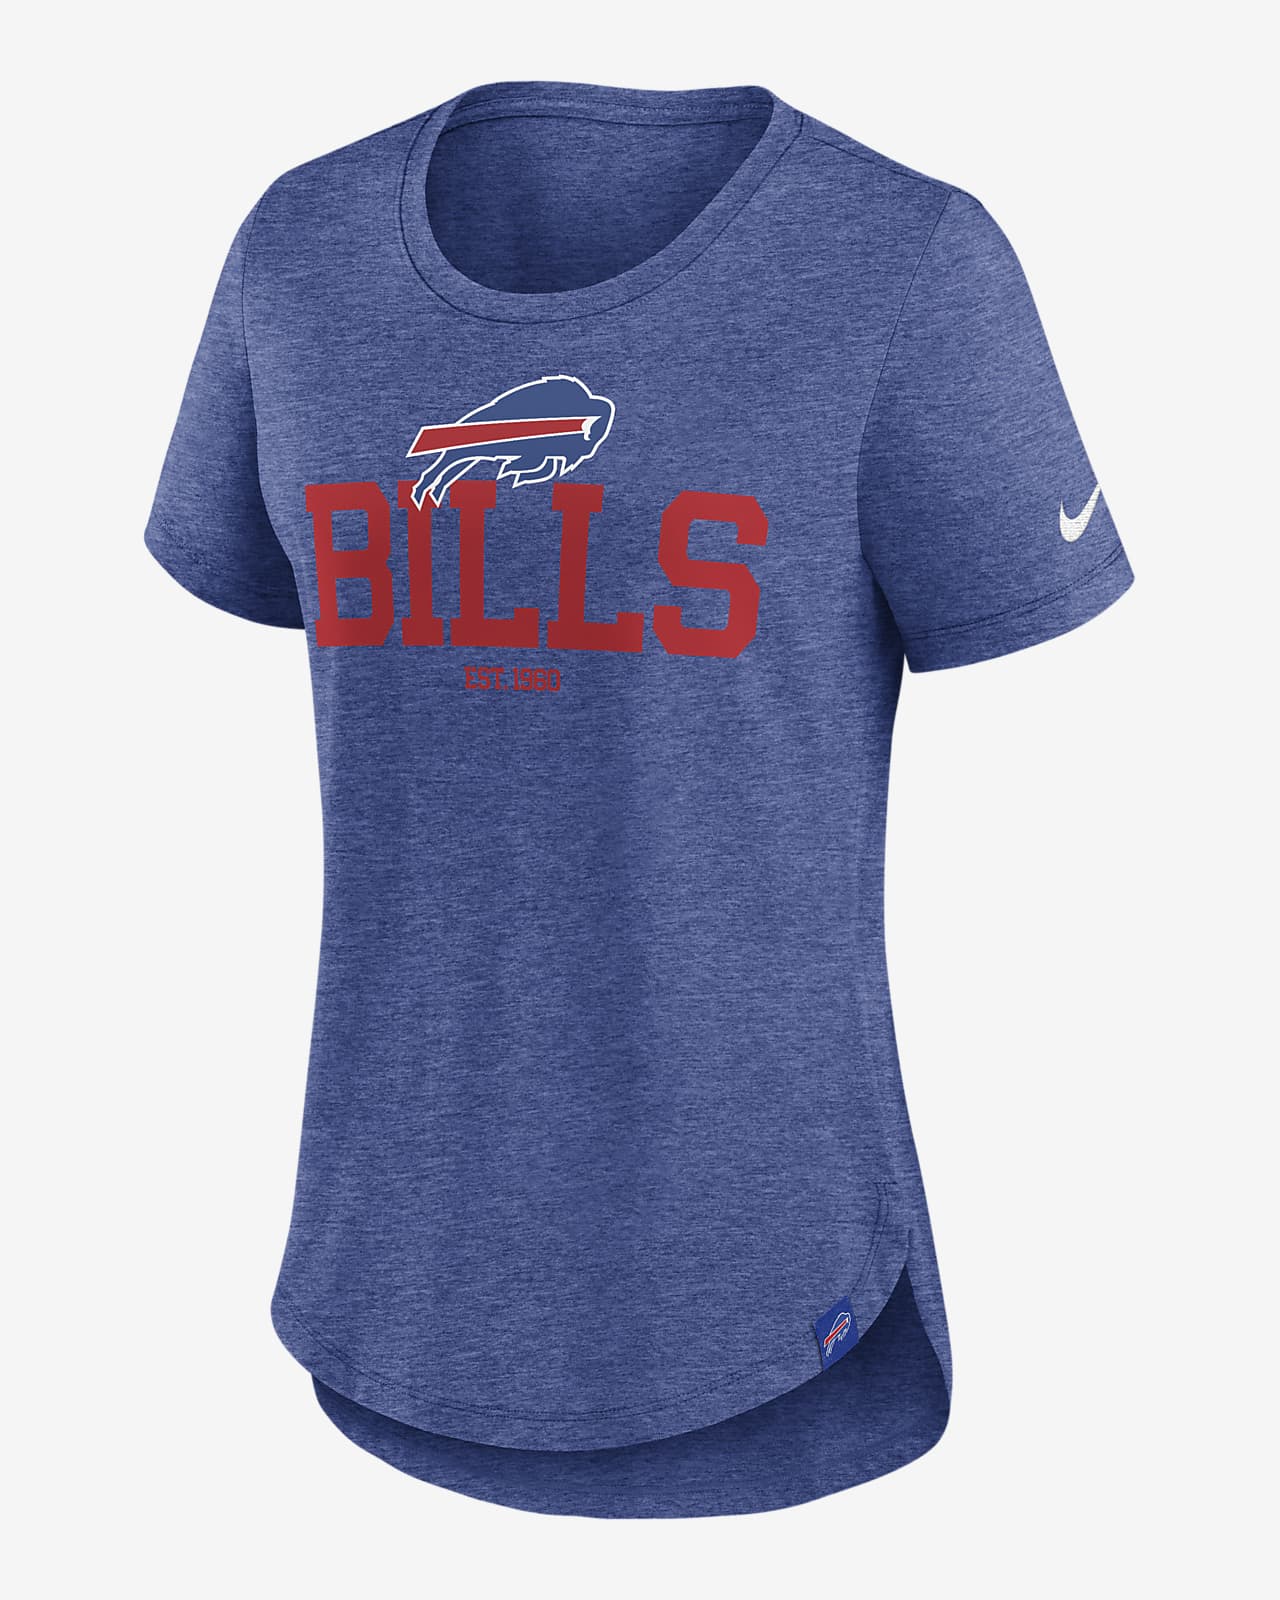 Buffalo Bills Women's Nike NFL T-Shirt